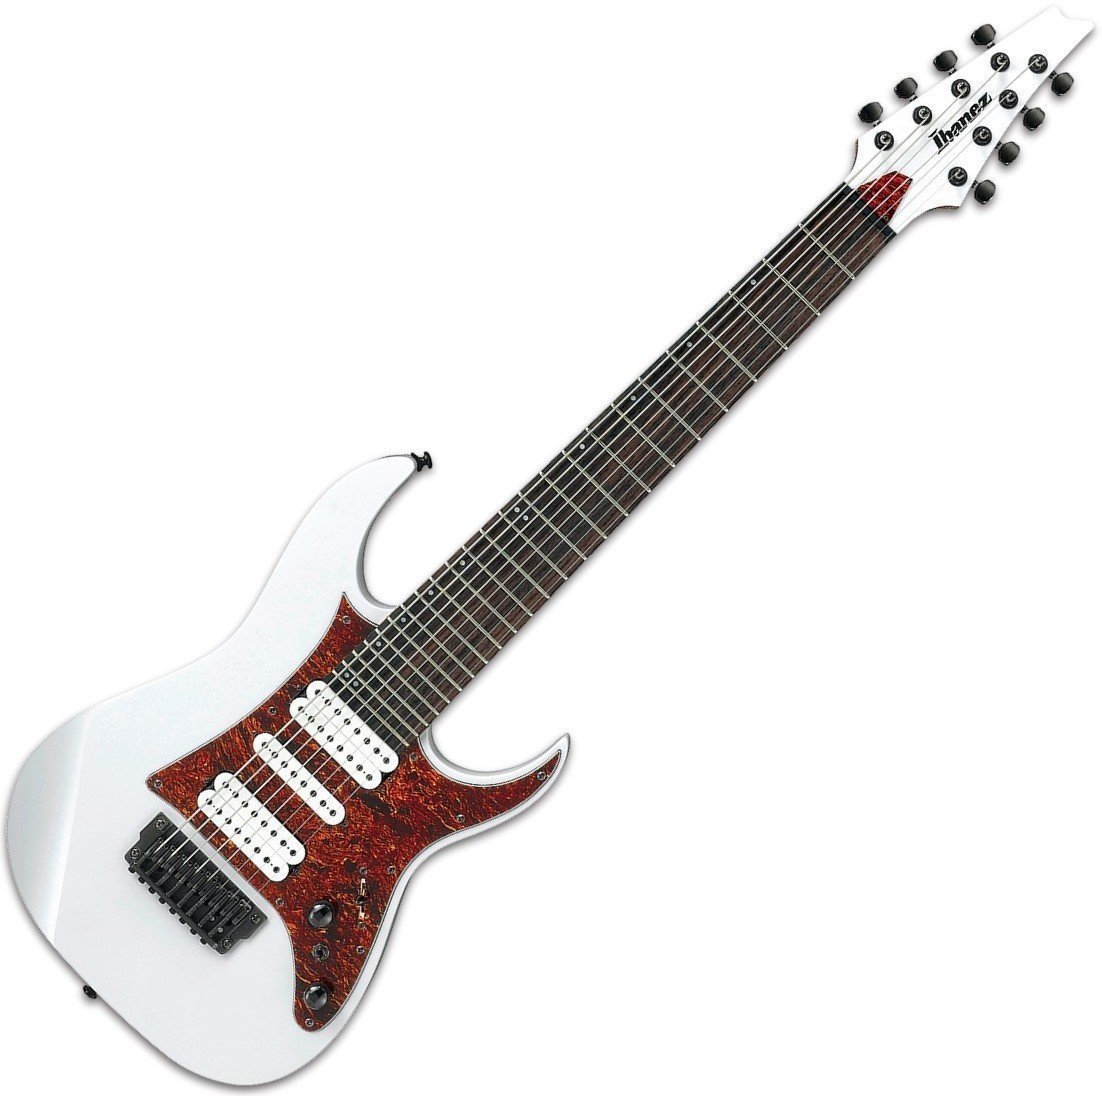 Signature E-Gitarre Ibanez TAM10 8-string Tosin Abasi signature White